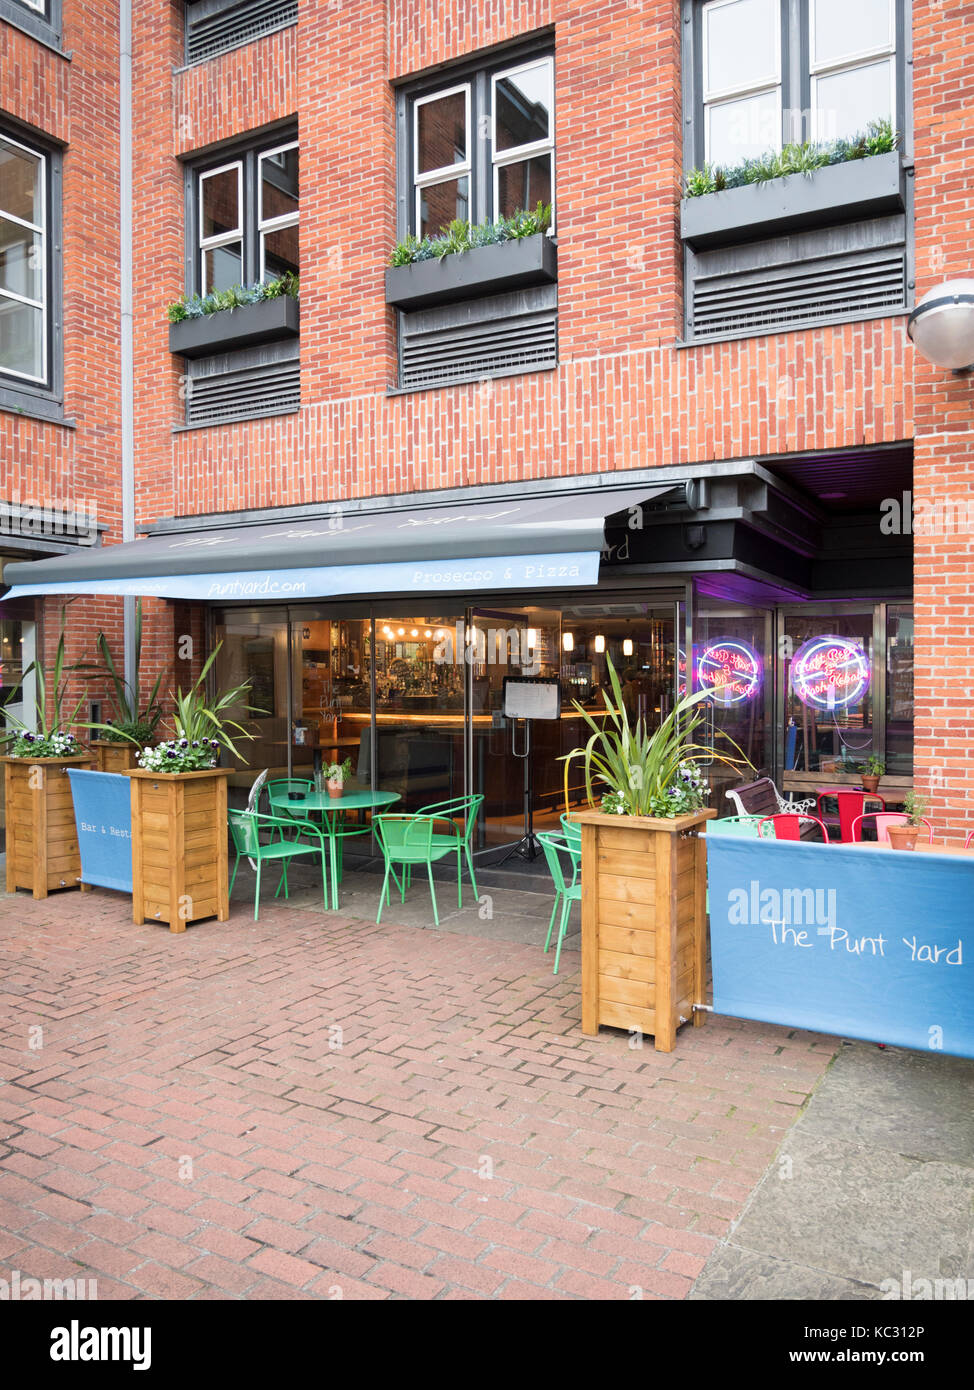 Le restaurant Yard Punt et cafe à Quayside Cambridge UK Banque D'Images